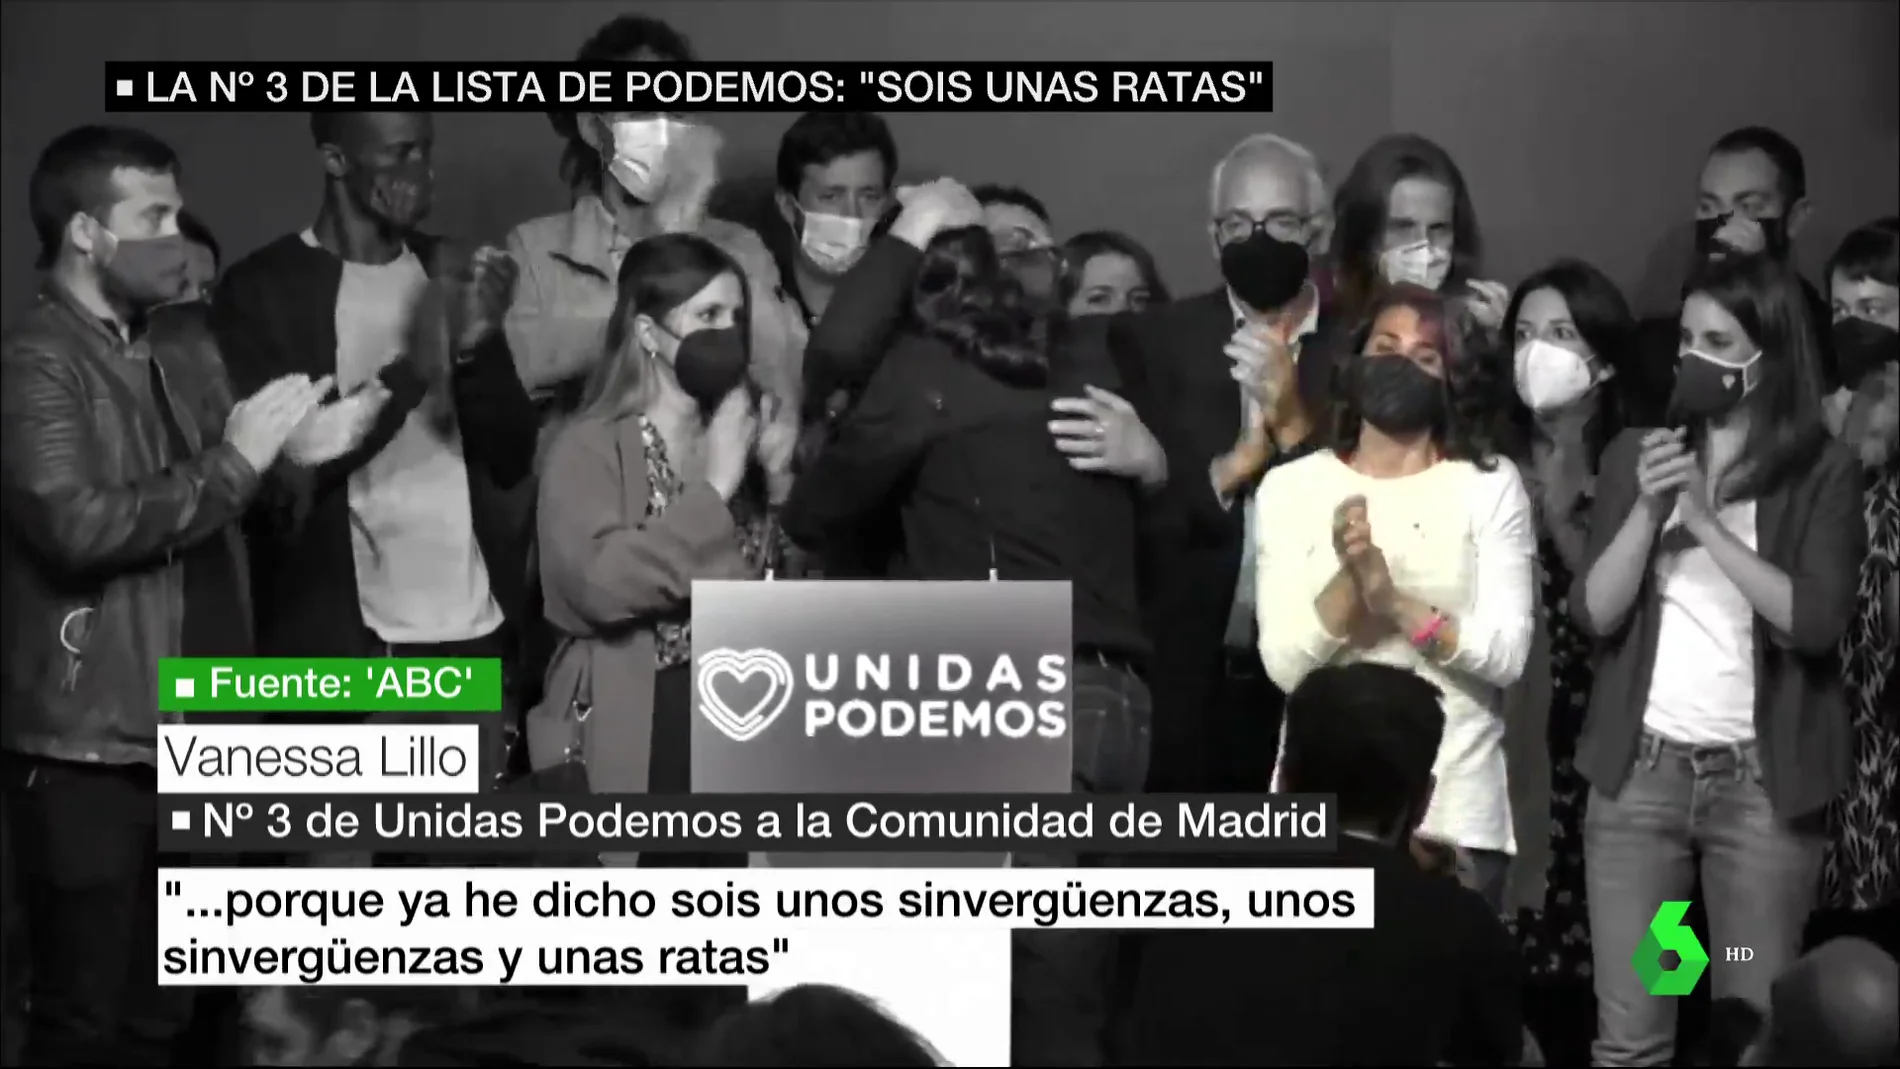 El audio de la número 3 de Iglesias el 4M, de IU, criticando a Podemos: "Sois unos sinvergüenzas y unas ratas"